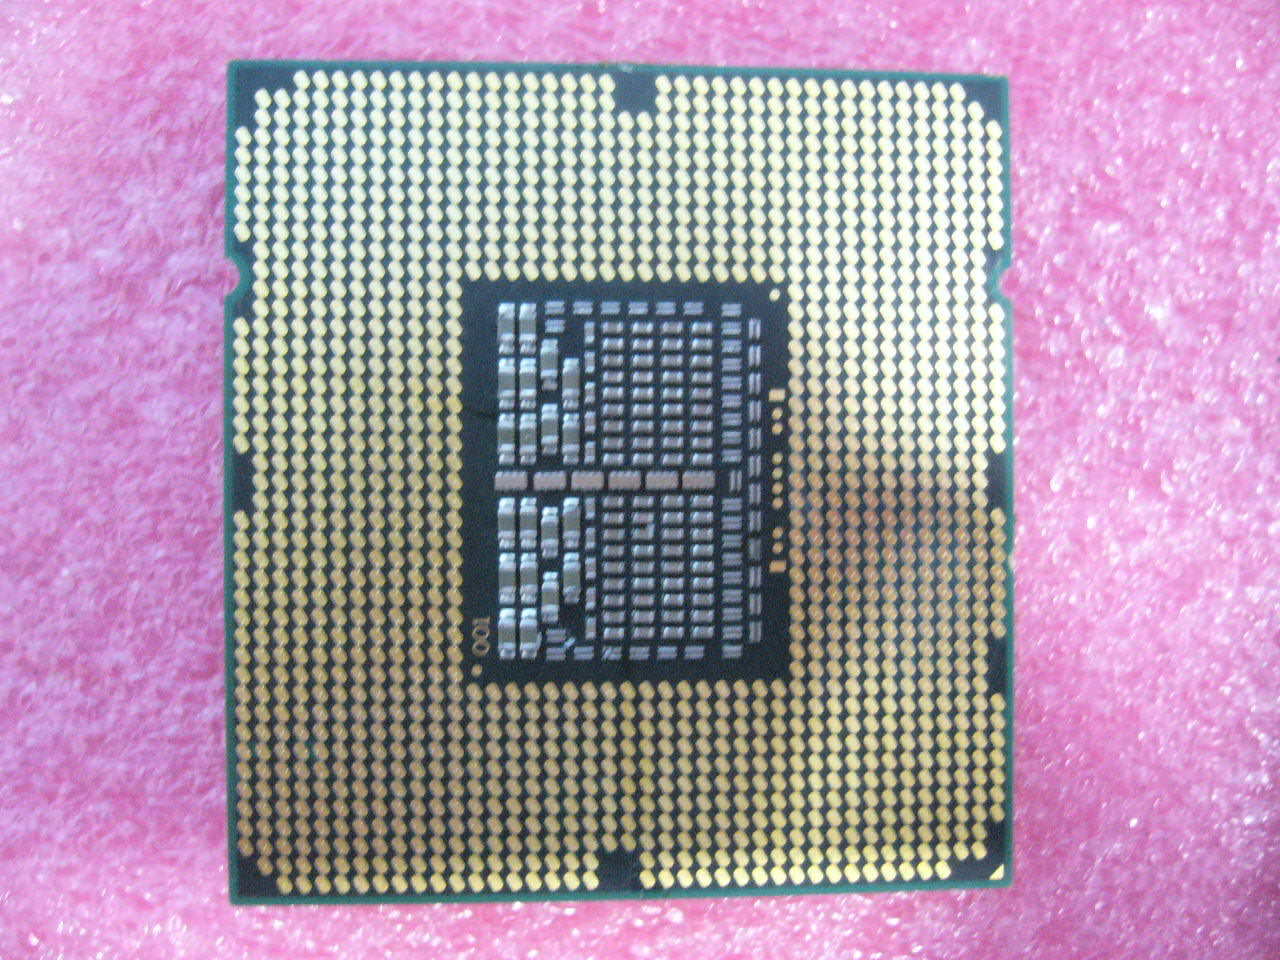 QTY 1x INTEL Quad-Cores CPU E5520 2.26GHZ/8MB 5.86GT/s QPI LGA1366 SLBFD - Click Image to Close